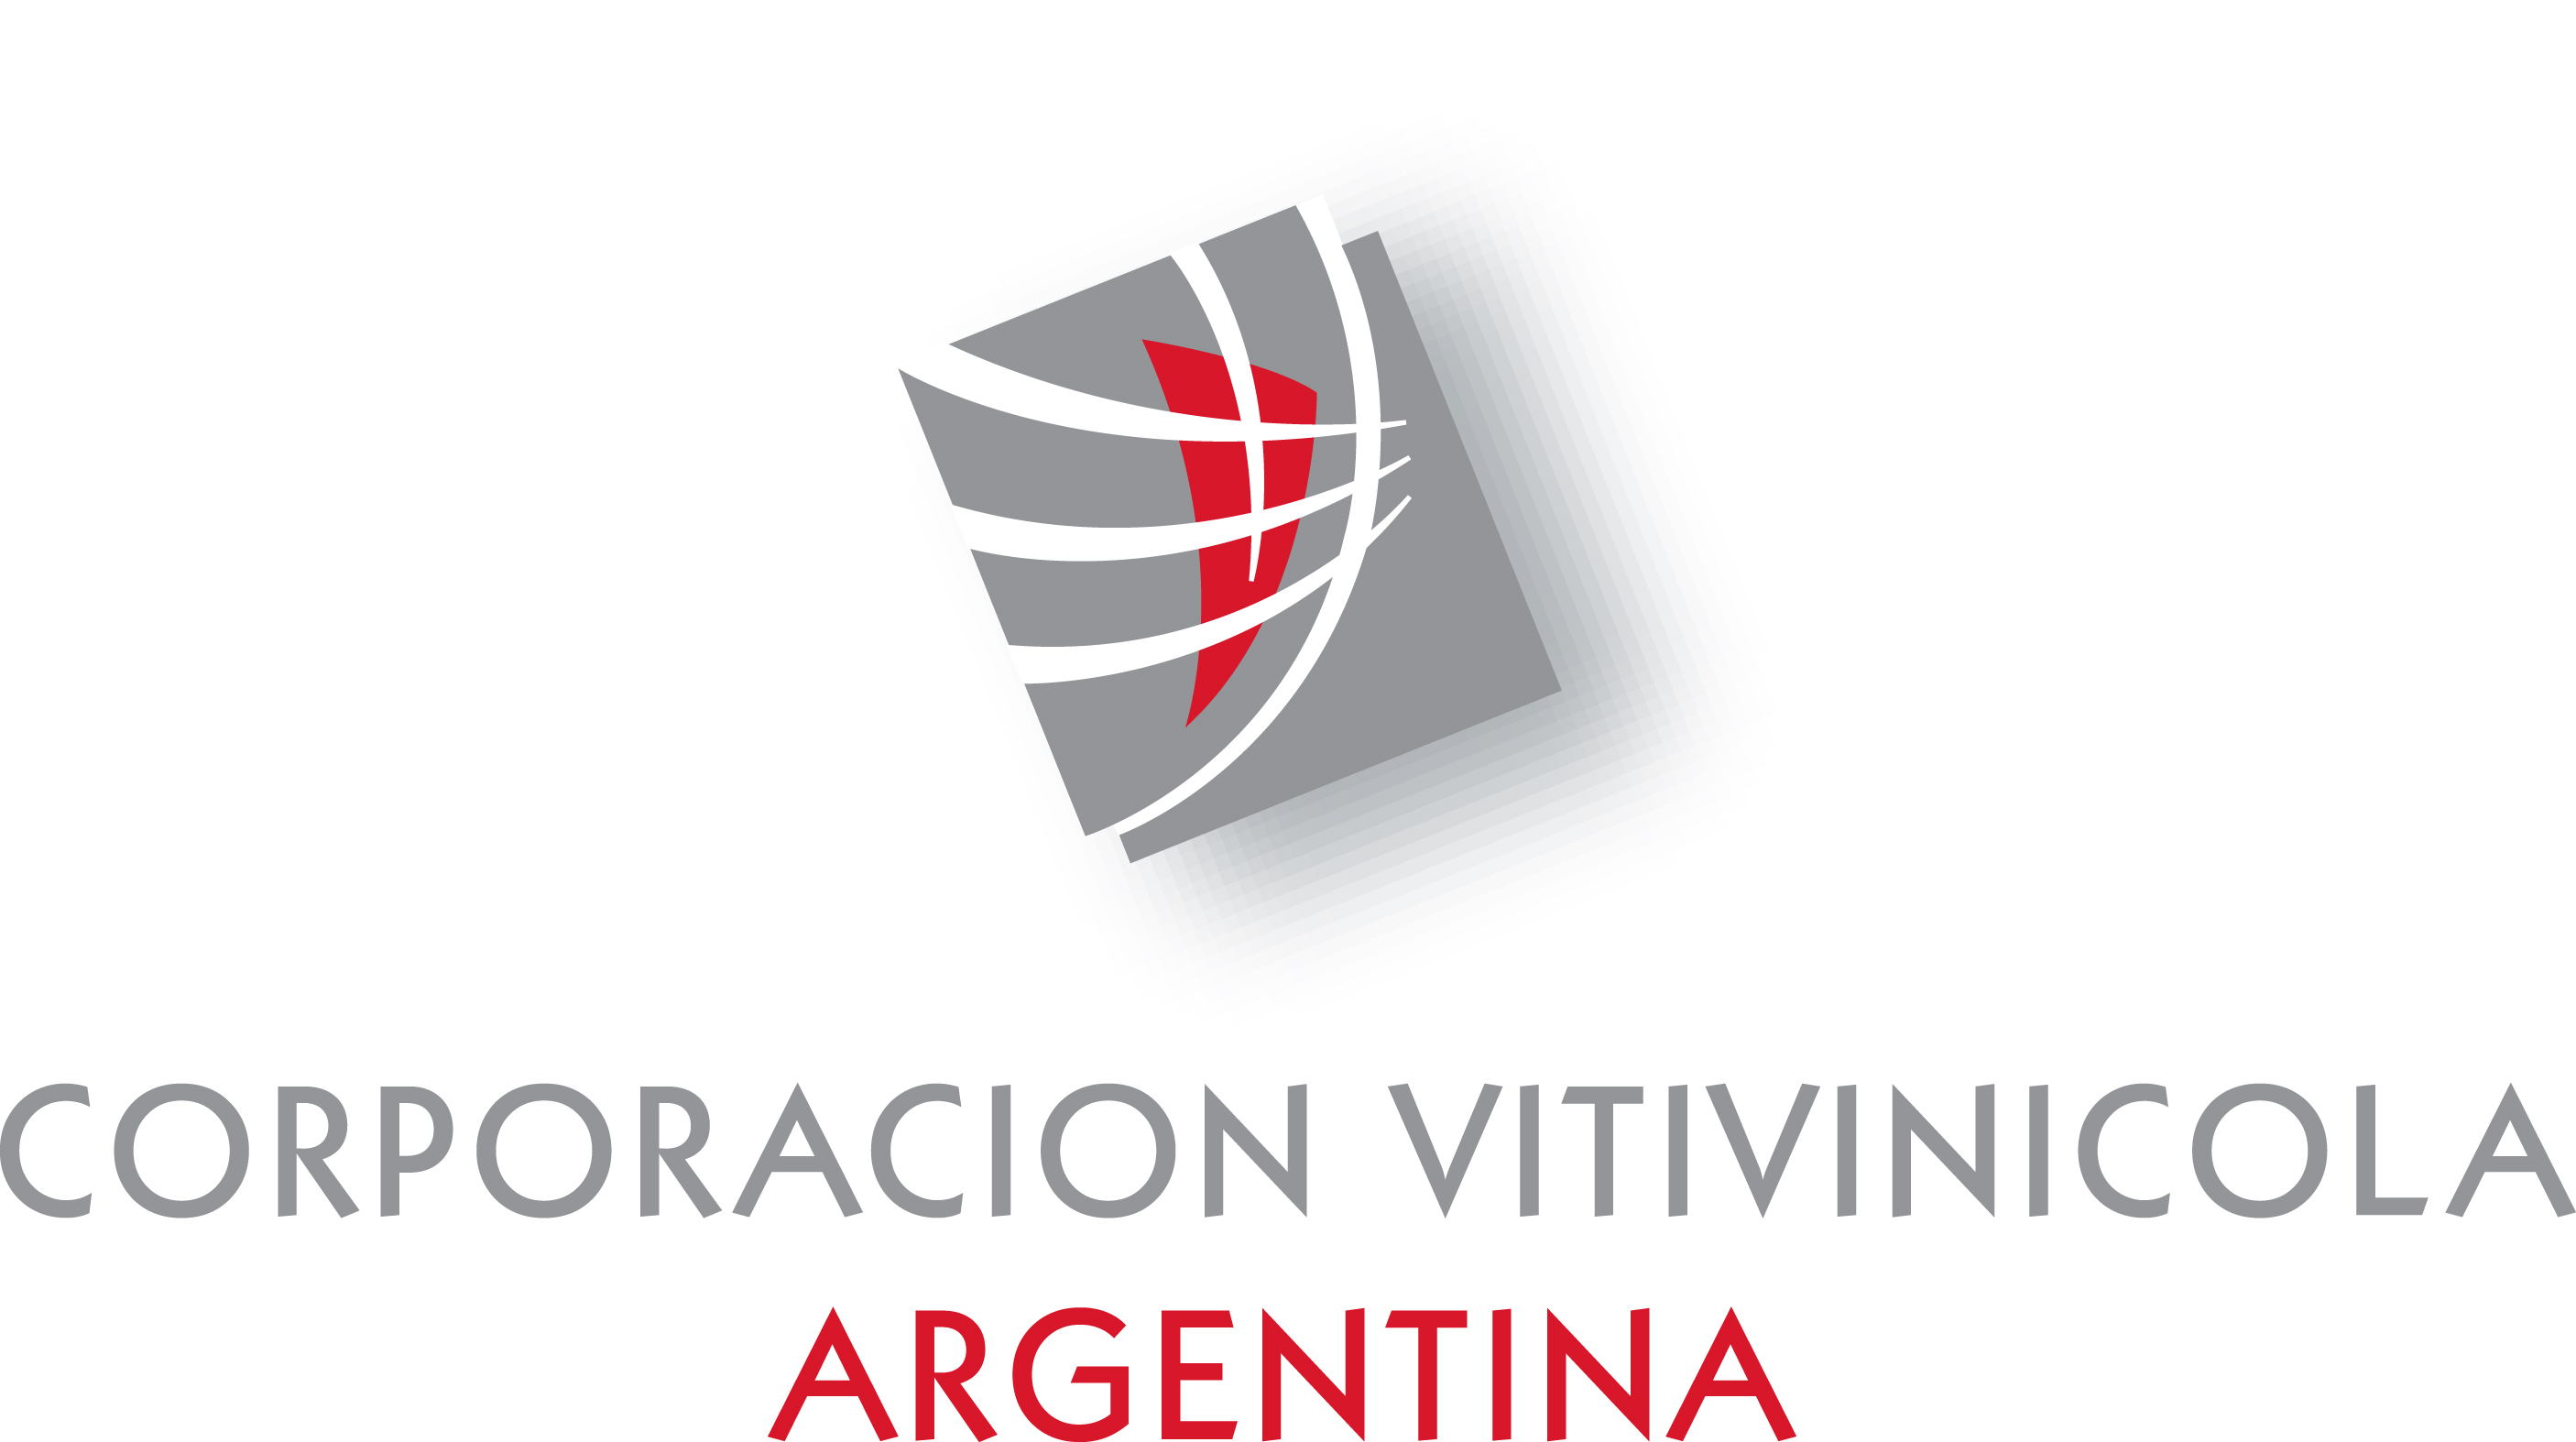 Corporación Vitivinicola Argentina